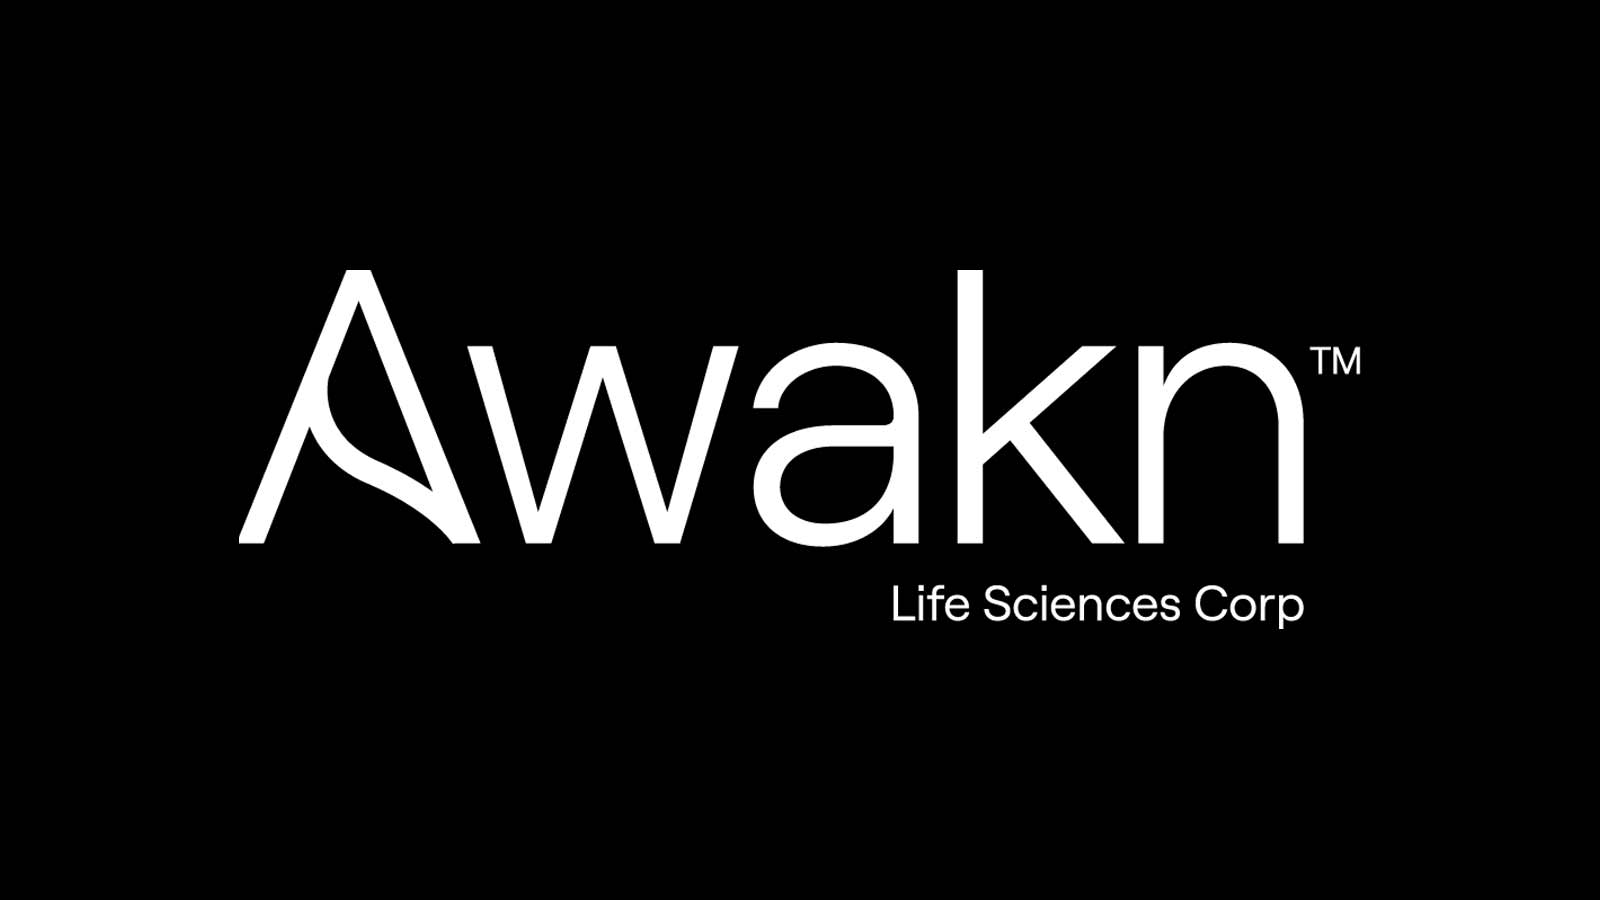 White logo on black background of Awakn Life Siences Corp.